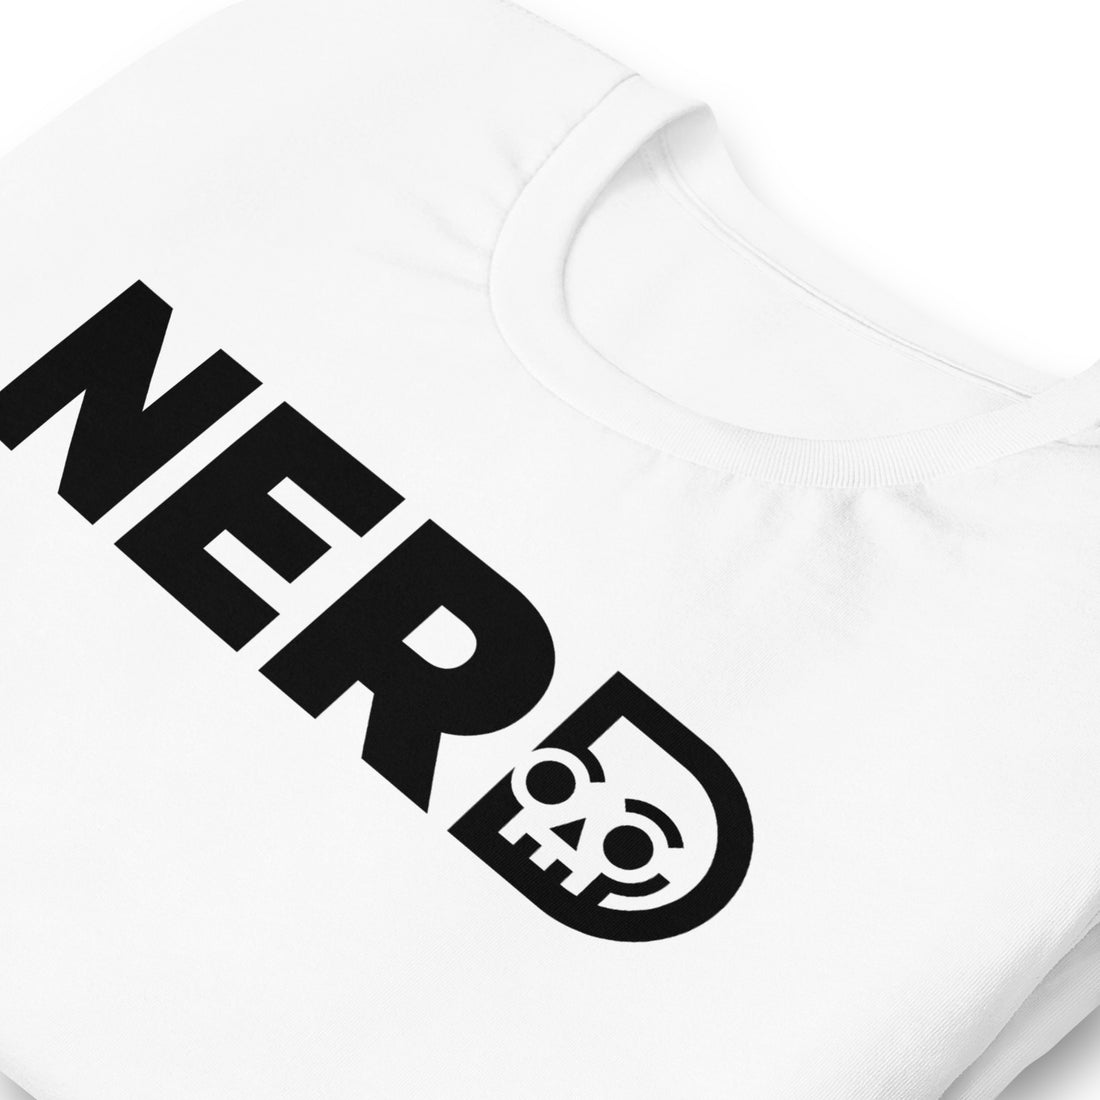 NERD White t-shirt